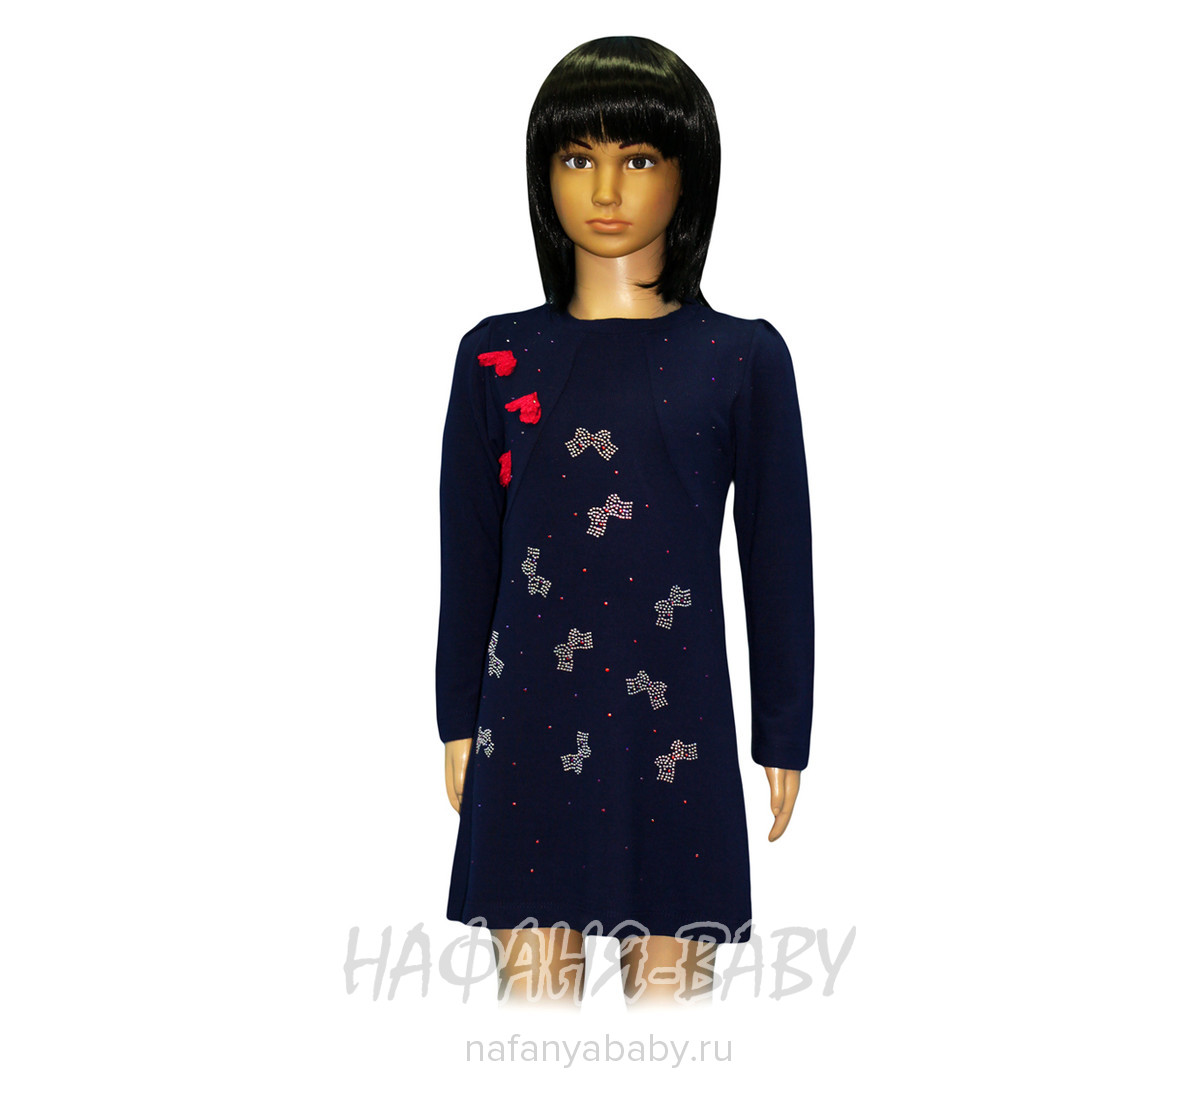 Детское платье LILY KIDS, купить в интернет магазине Нафаня. арт: 2701.